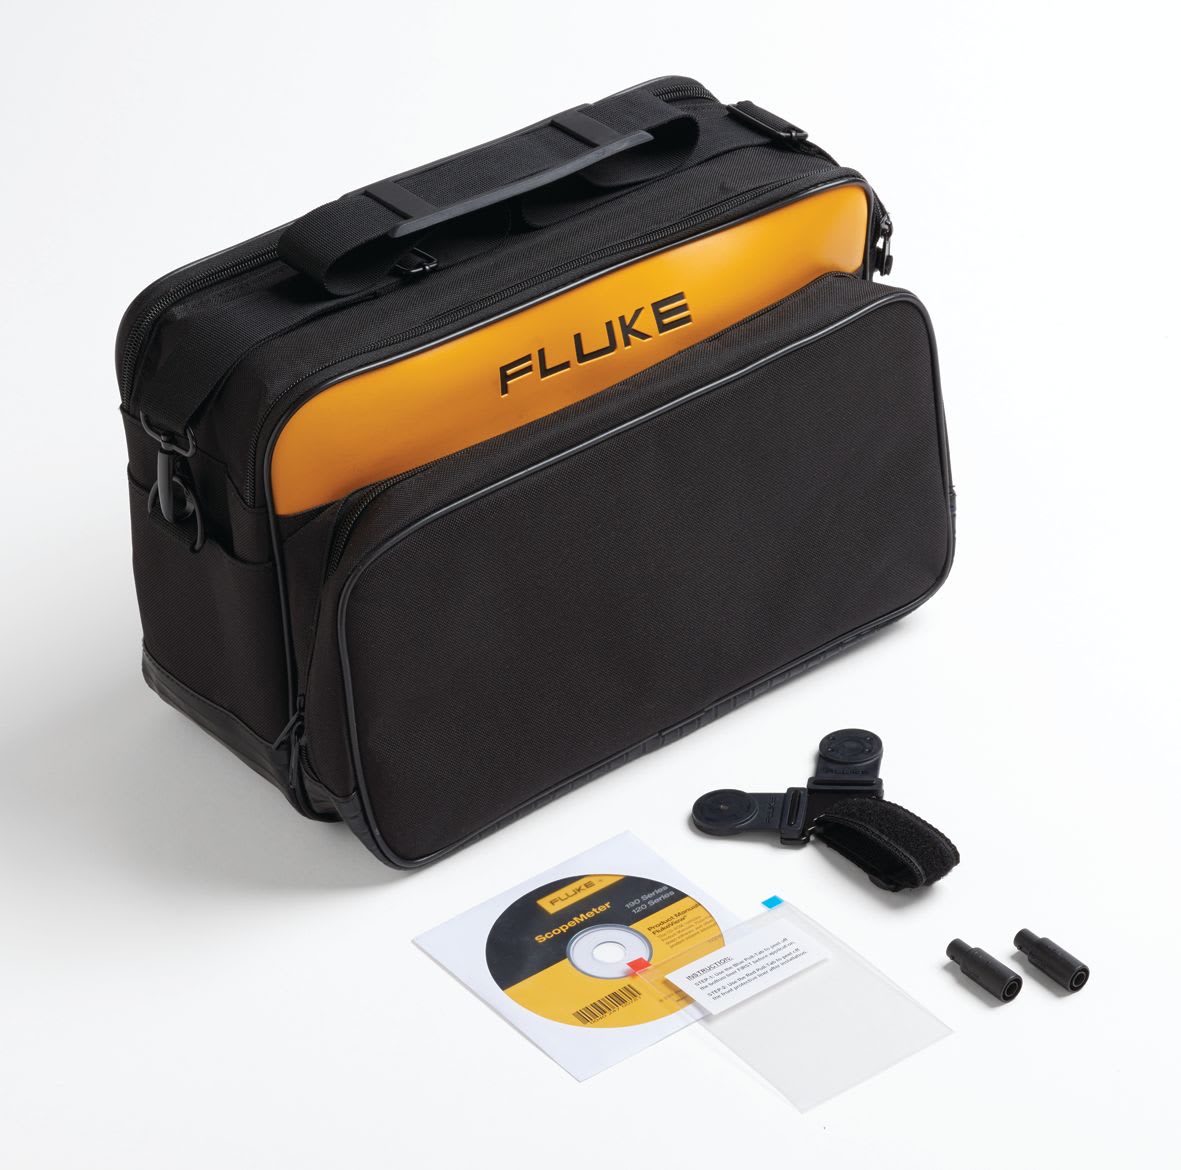 Fluke - SCC120B kit d'accessoires, sacoches et logiciels pour la série 120B,